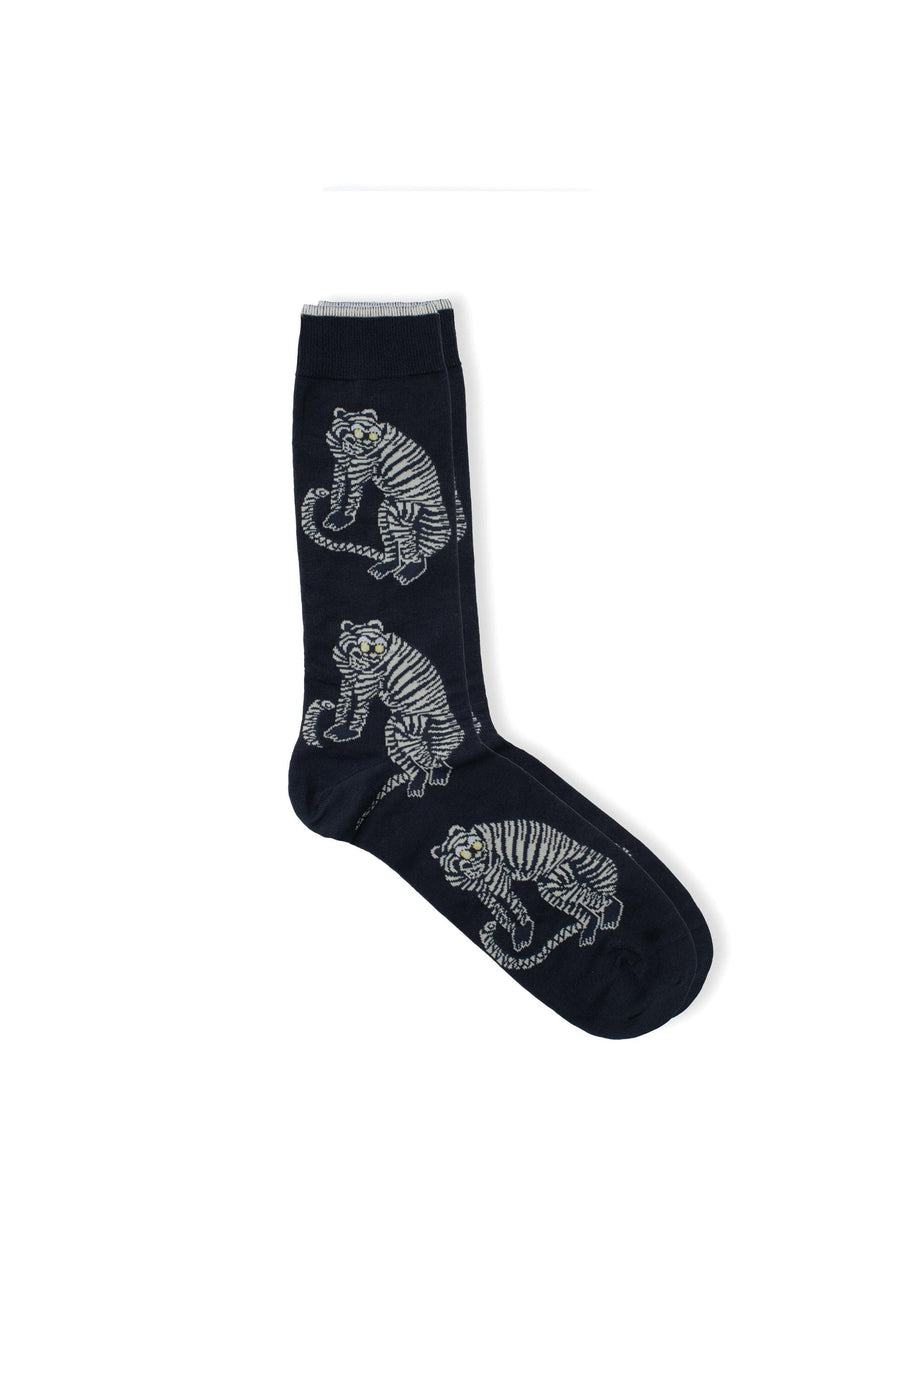 Men’s Socks Sansindo Tiger Print Black/Cream